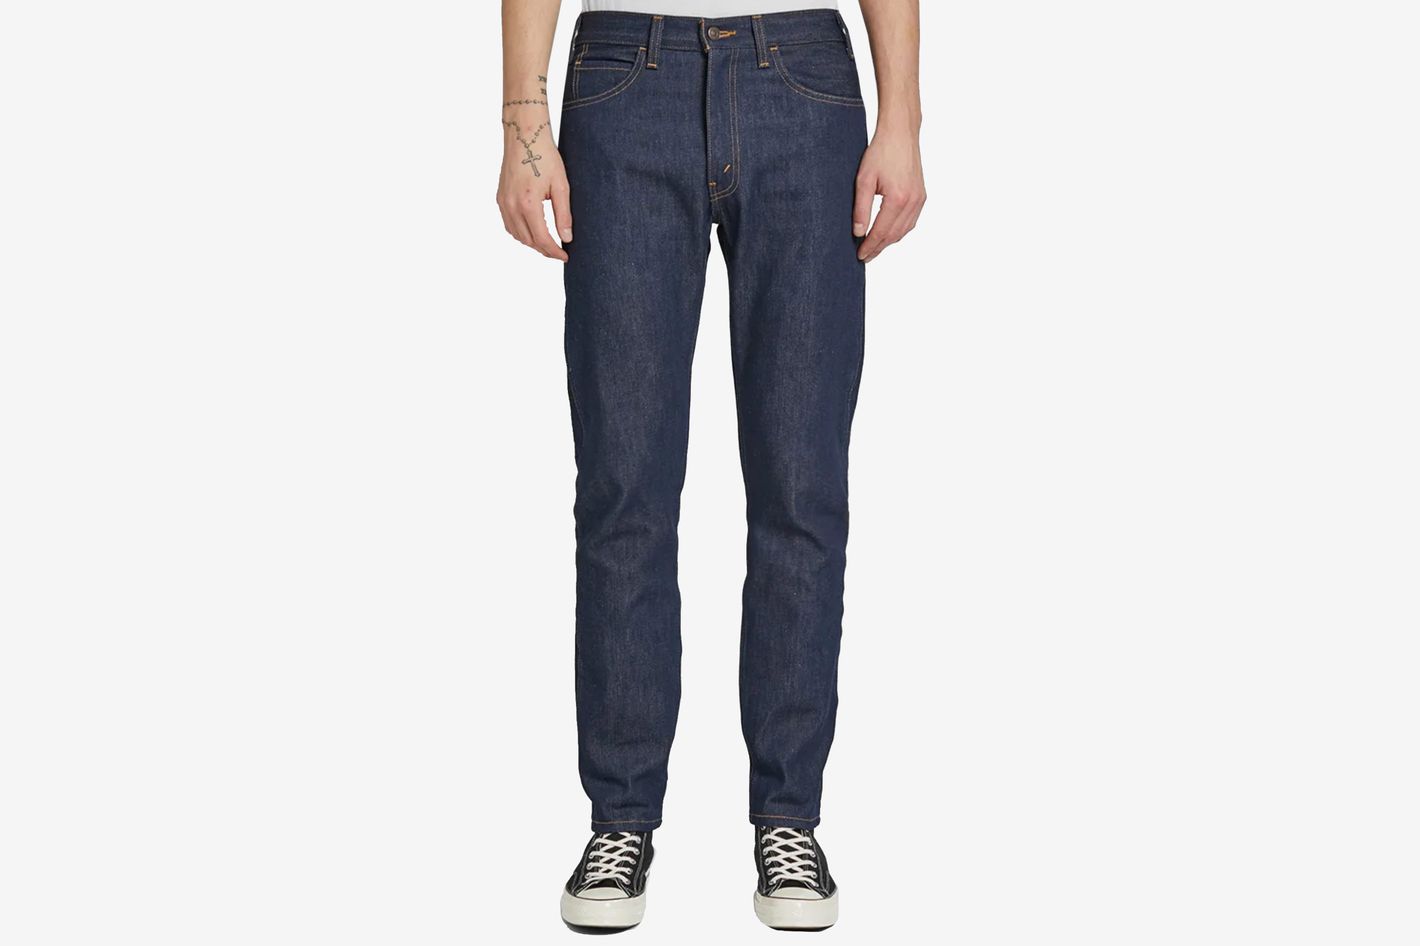 Buy > big dude jeans > in stock